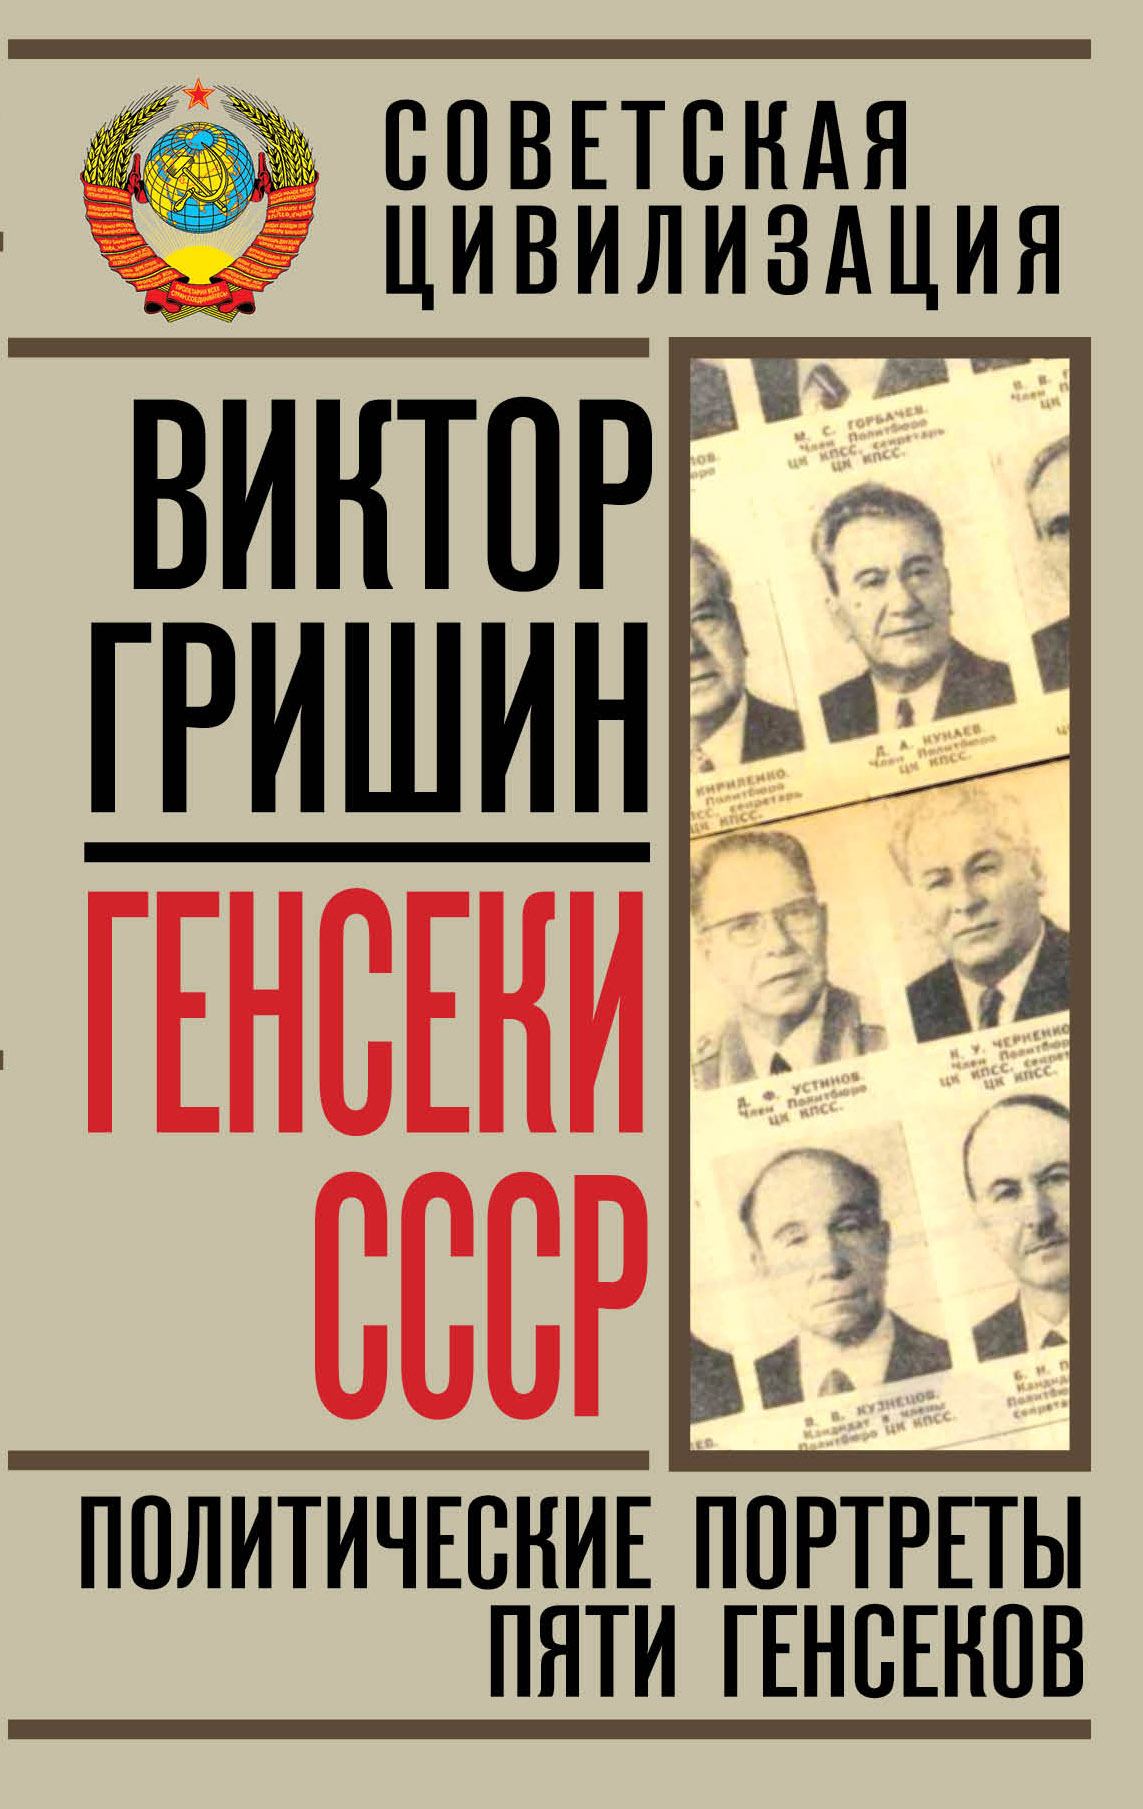 Генсеки СССР. Политические портреты пяти генсеков случается запасливо накапливая